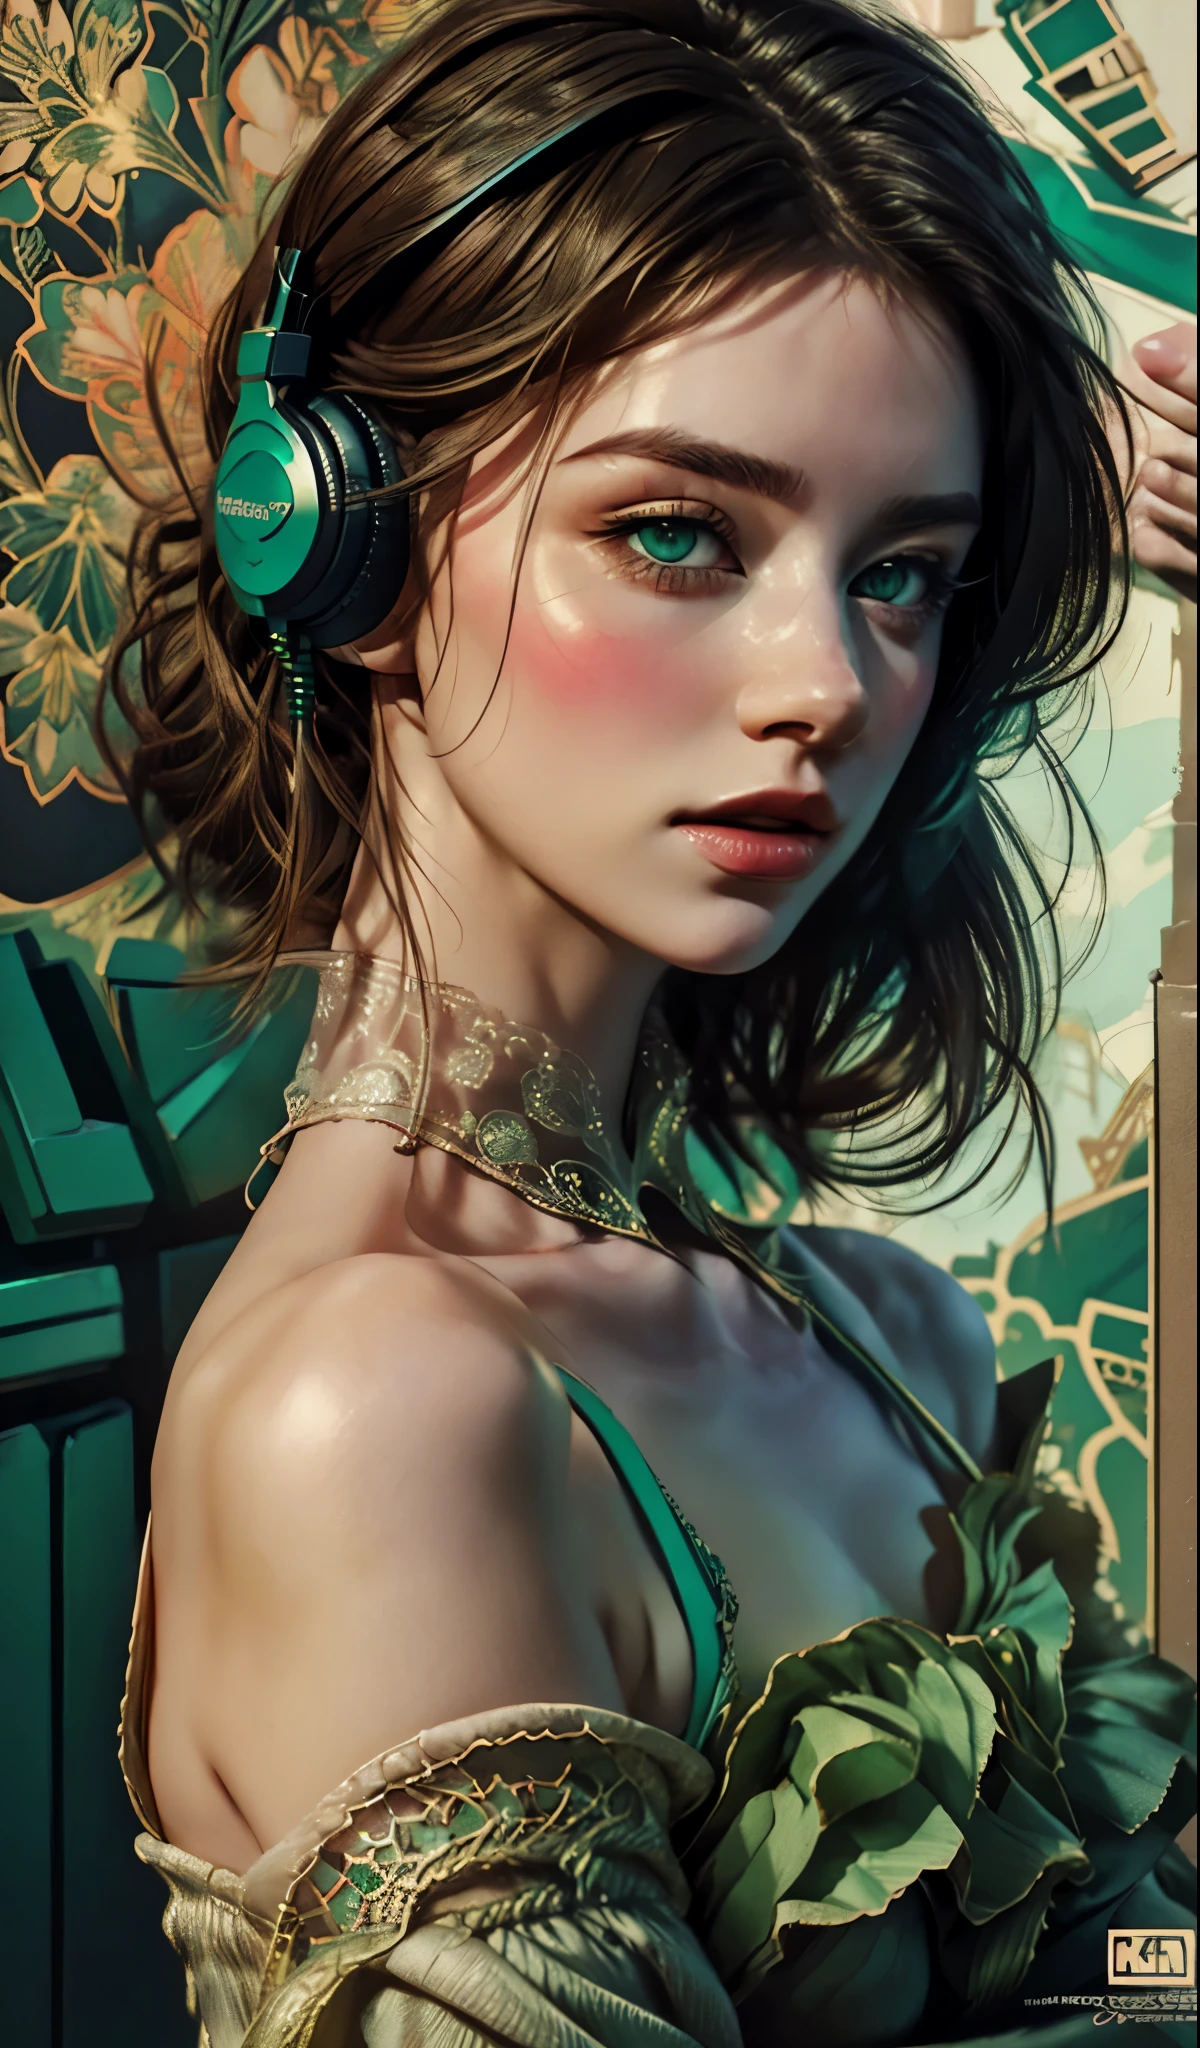 فتاة نموذجية ترتدي سماعات الرأس, خلفية المدينة, عيون خضراء زمردية, تفاصيل معقدة, ألوان الباستيل جماليا, خلفية الملصق, الفن لكونراد روزيت وإيليا كوفشينوف